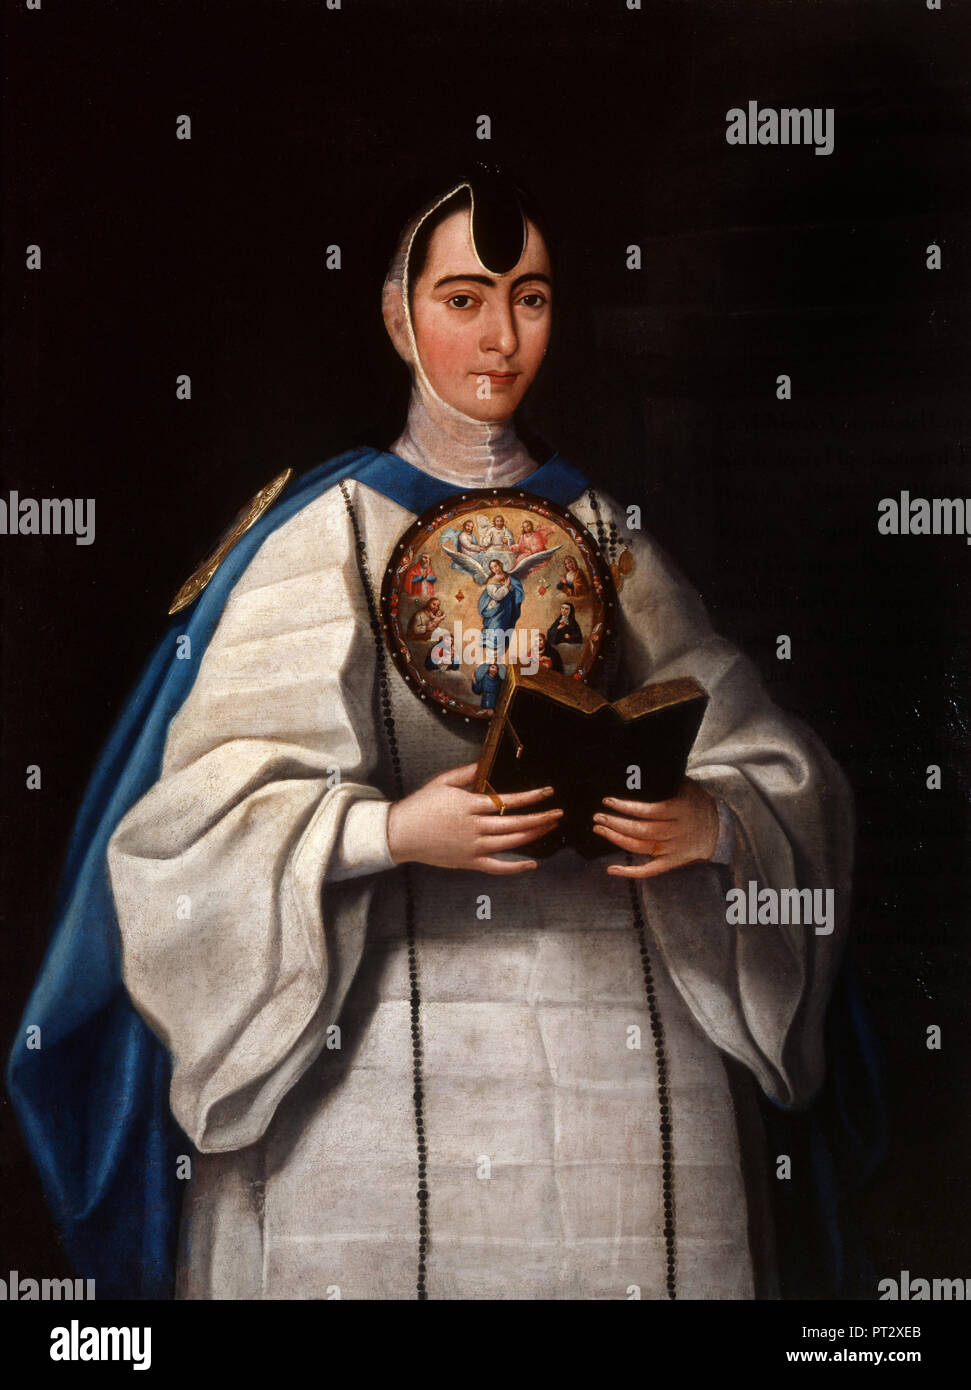 Jose Maria Vazquez, Portrait von Schwester María Antonia del Corazon de Jesus 1814 Öl auf Leinwand, Museo Nacional de Arte, Mexiko City, Mexiko. Stockfoto